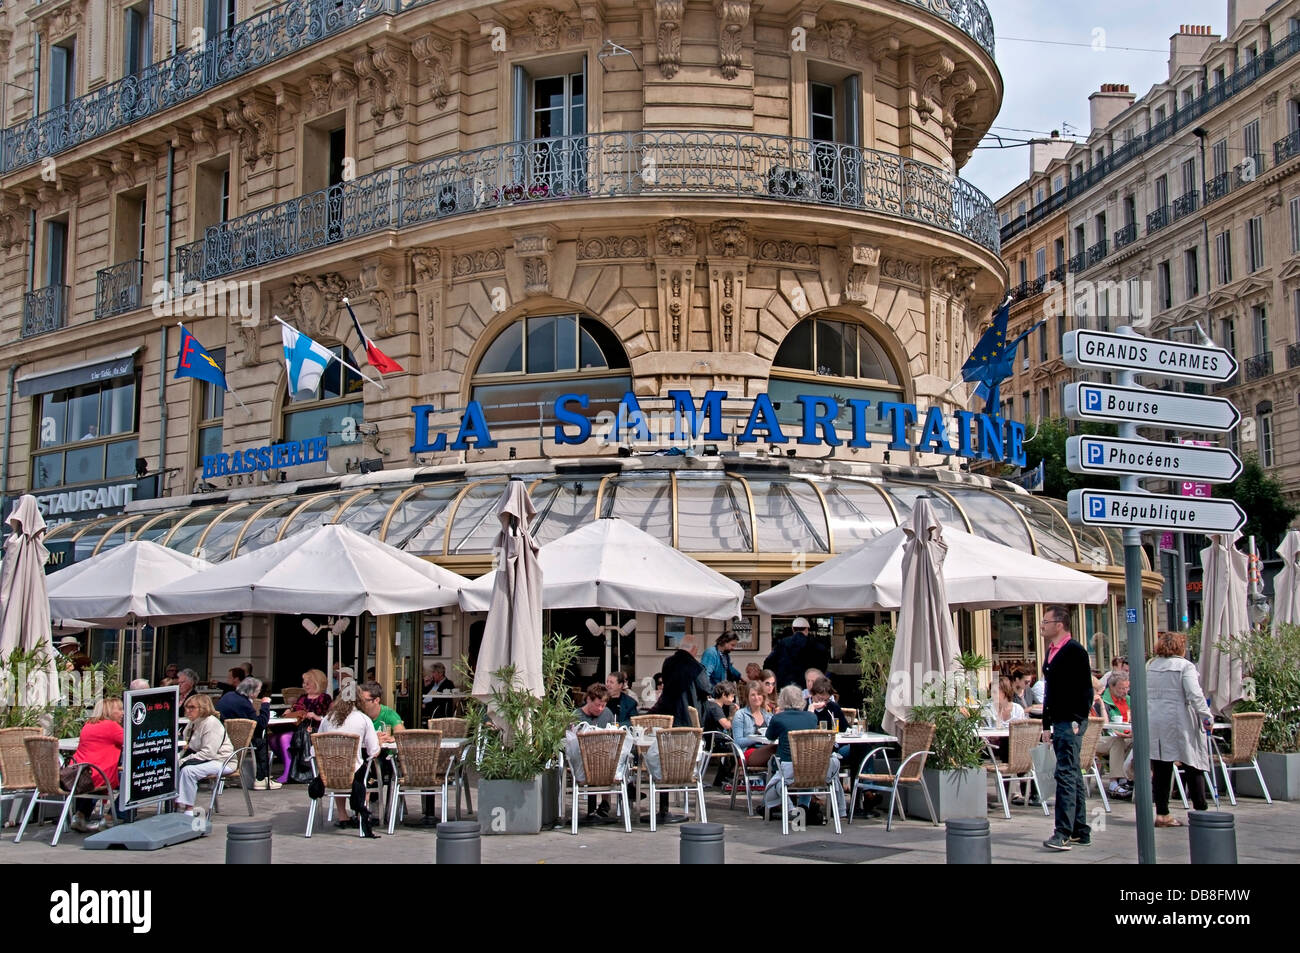 La Samaritaine Restaurant Cafe Bar Pub Marseilles France Old Vieux Port on  Quai du Port Stock Photo - Alamy